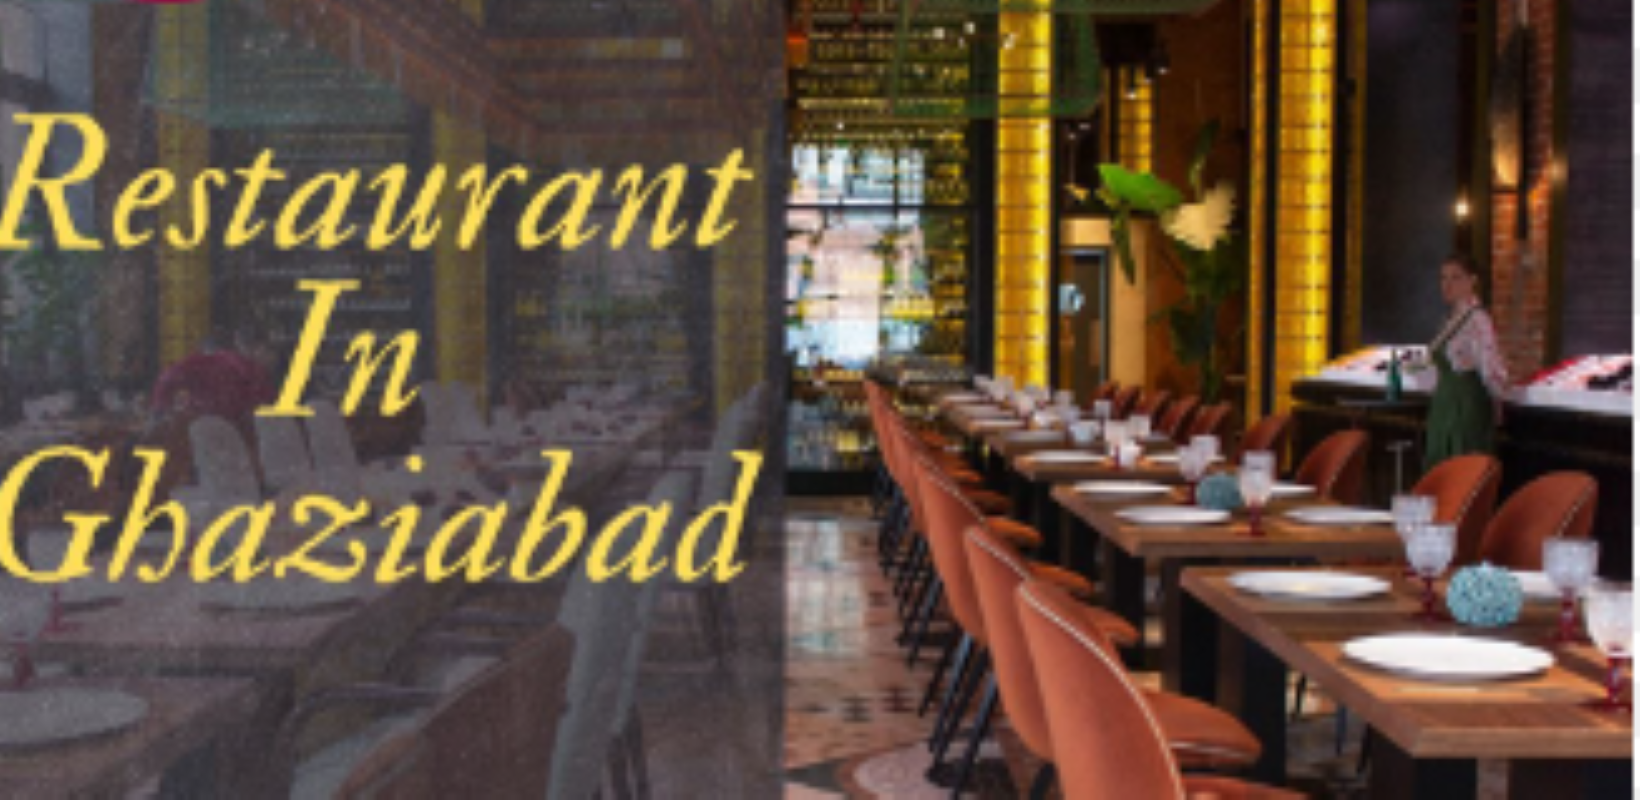 Ghaziabad News: बिना अधिकार के ITC का लाभ ले रहे होटल और रेस्तरां पर होगी कार्रवाई